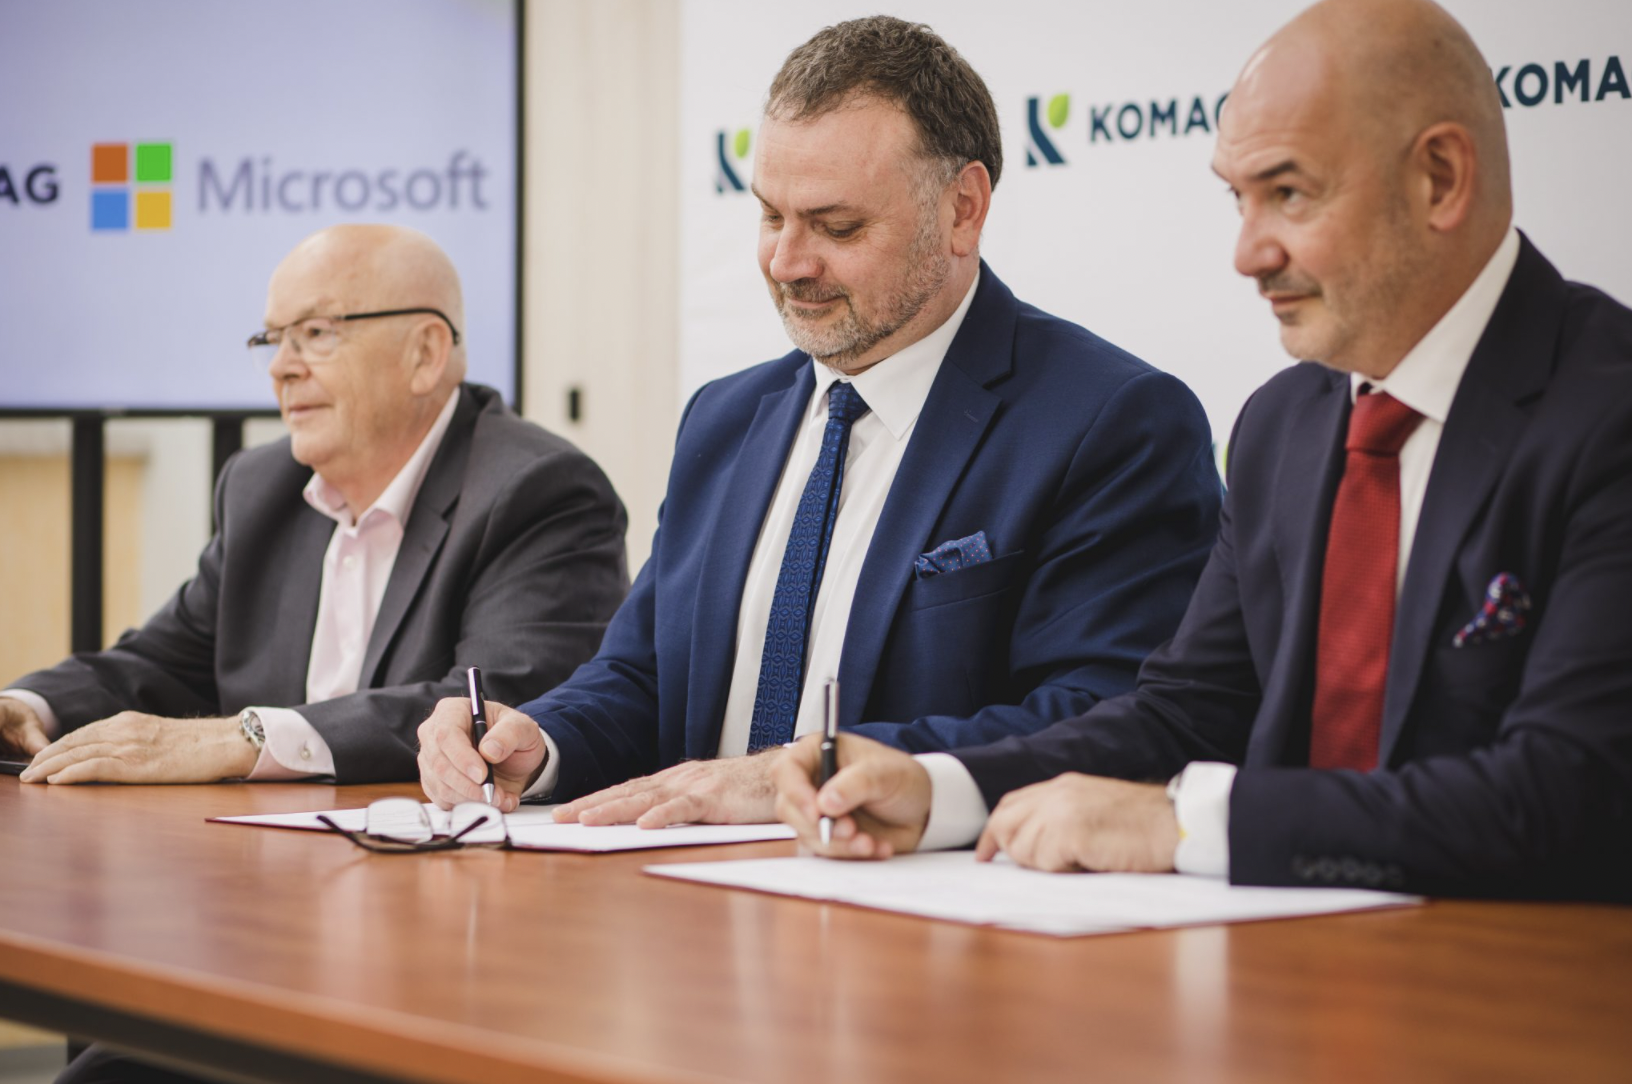 Microsoft i Instytut Techniki Górniczej KOMAG łączą siły w celu zwiększenia cyberodporności w sektorze górniczym i energetycznym